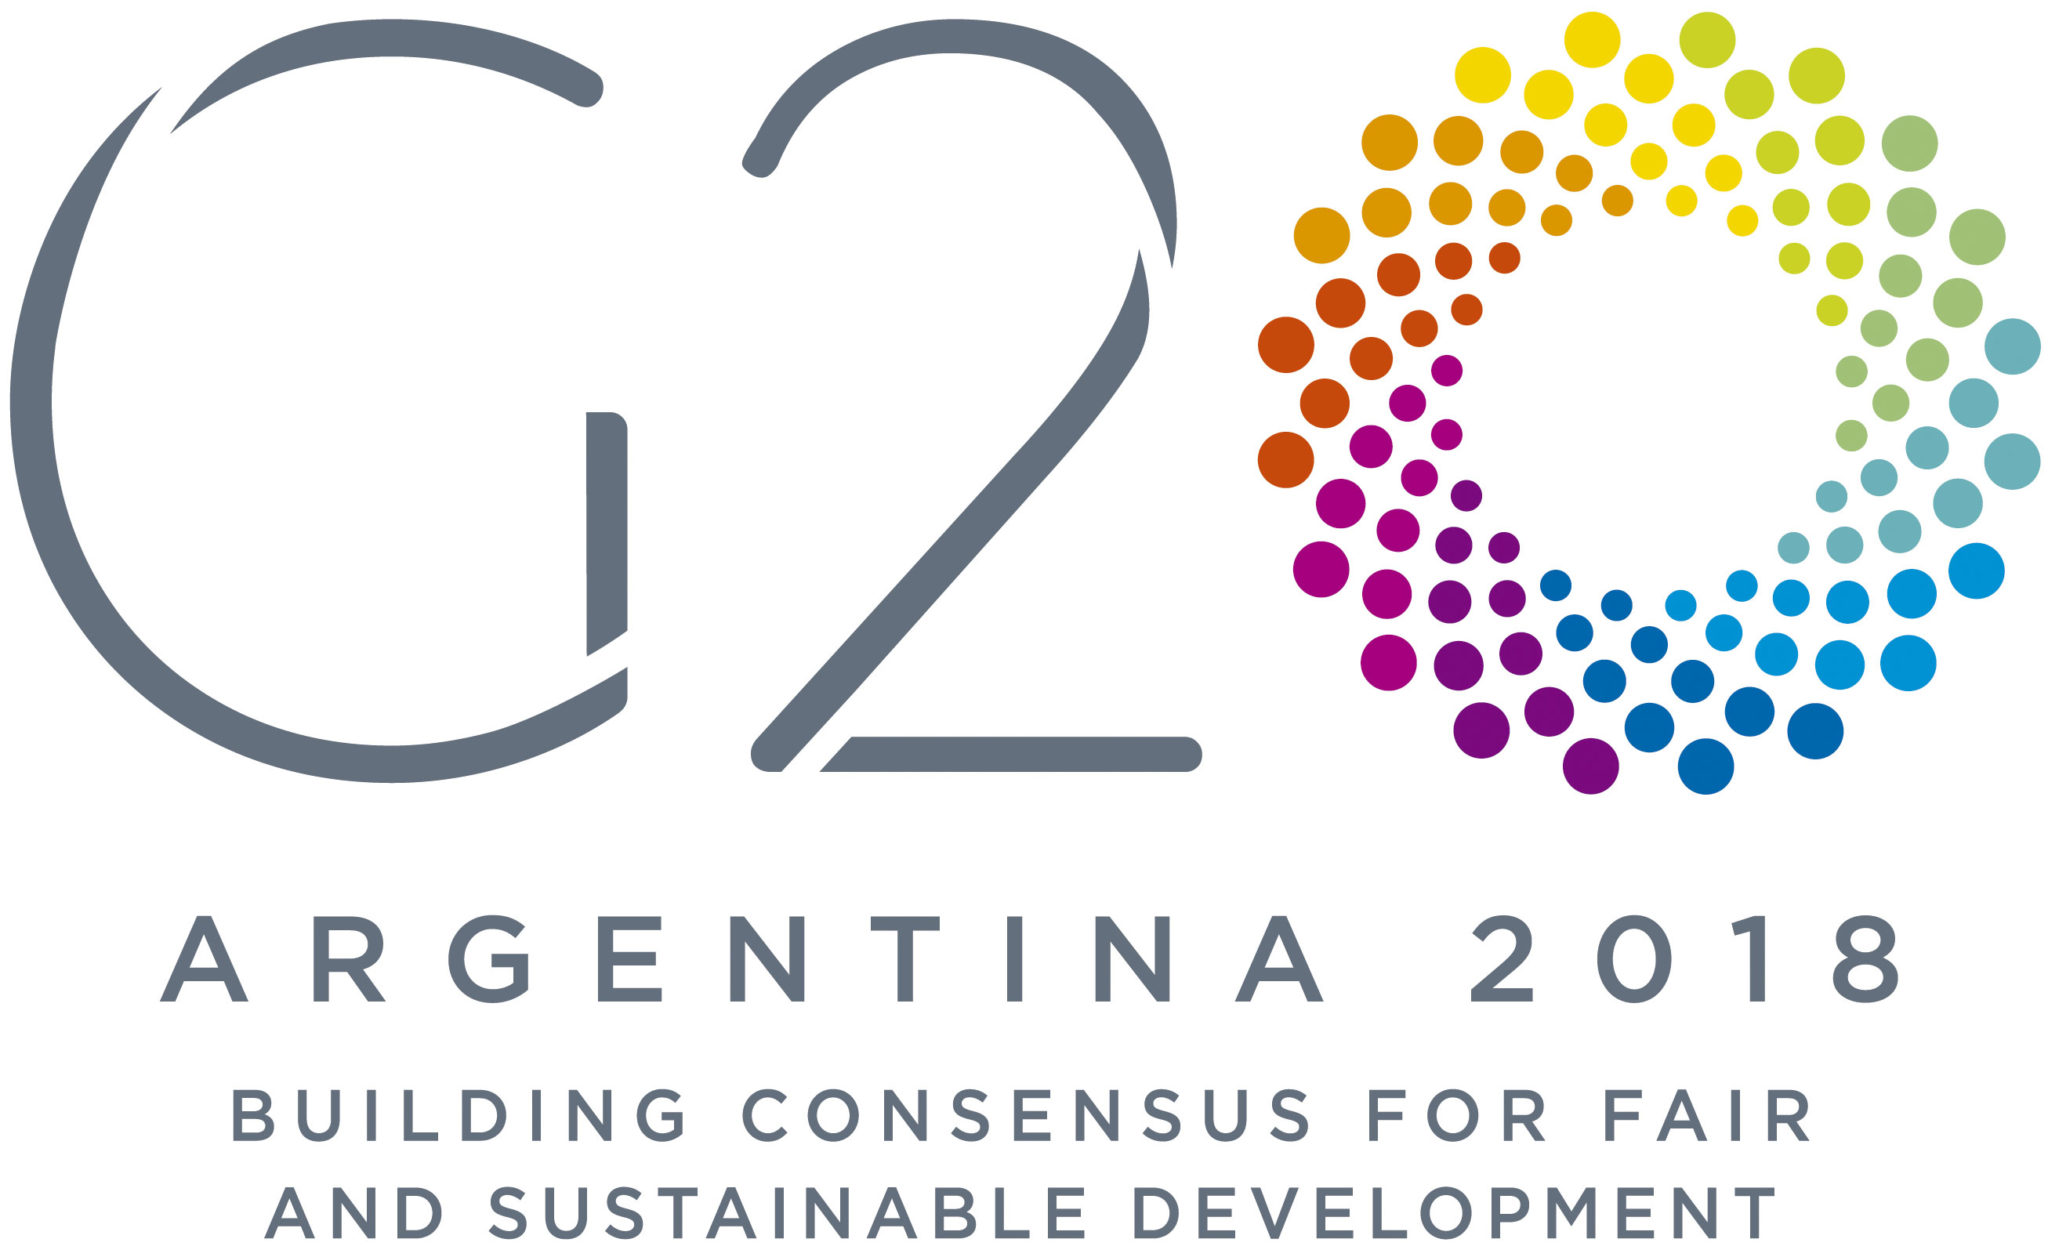 Ministros de finanzas del G20 reciben informe sobre monitoreo de criptomercados